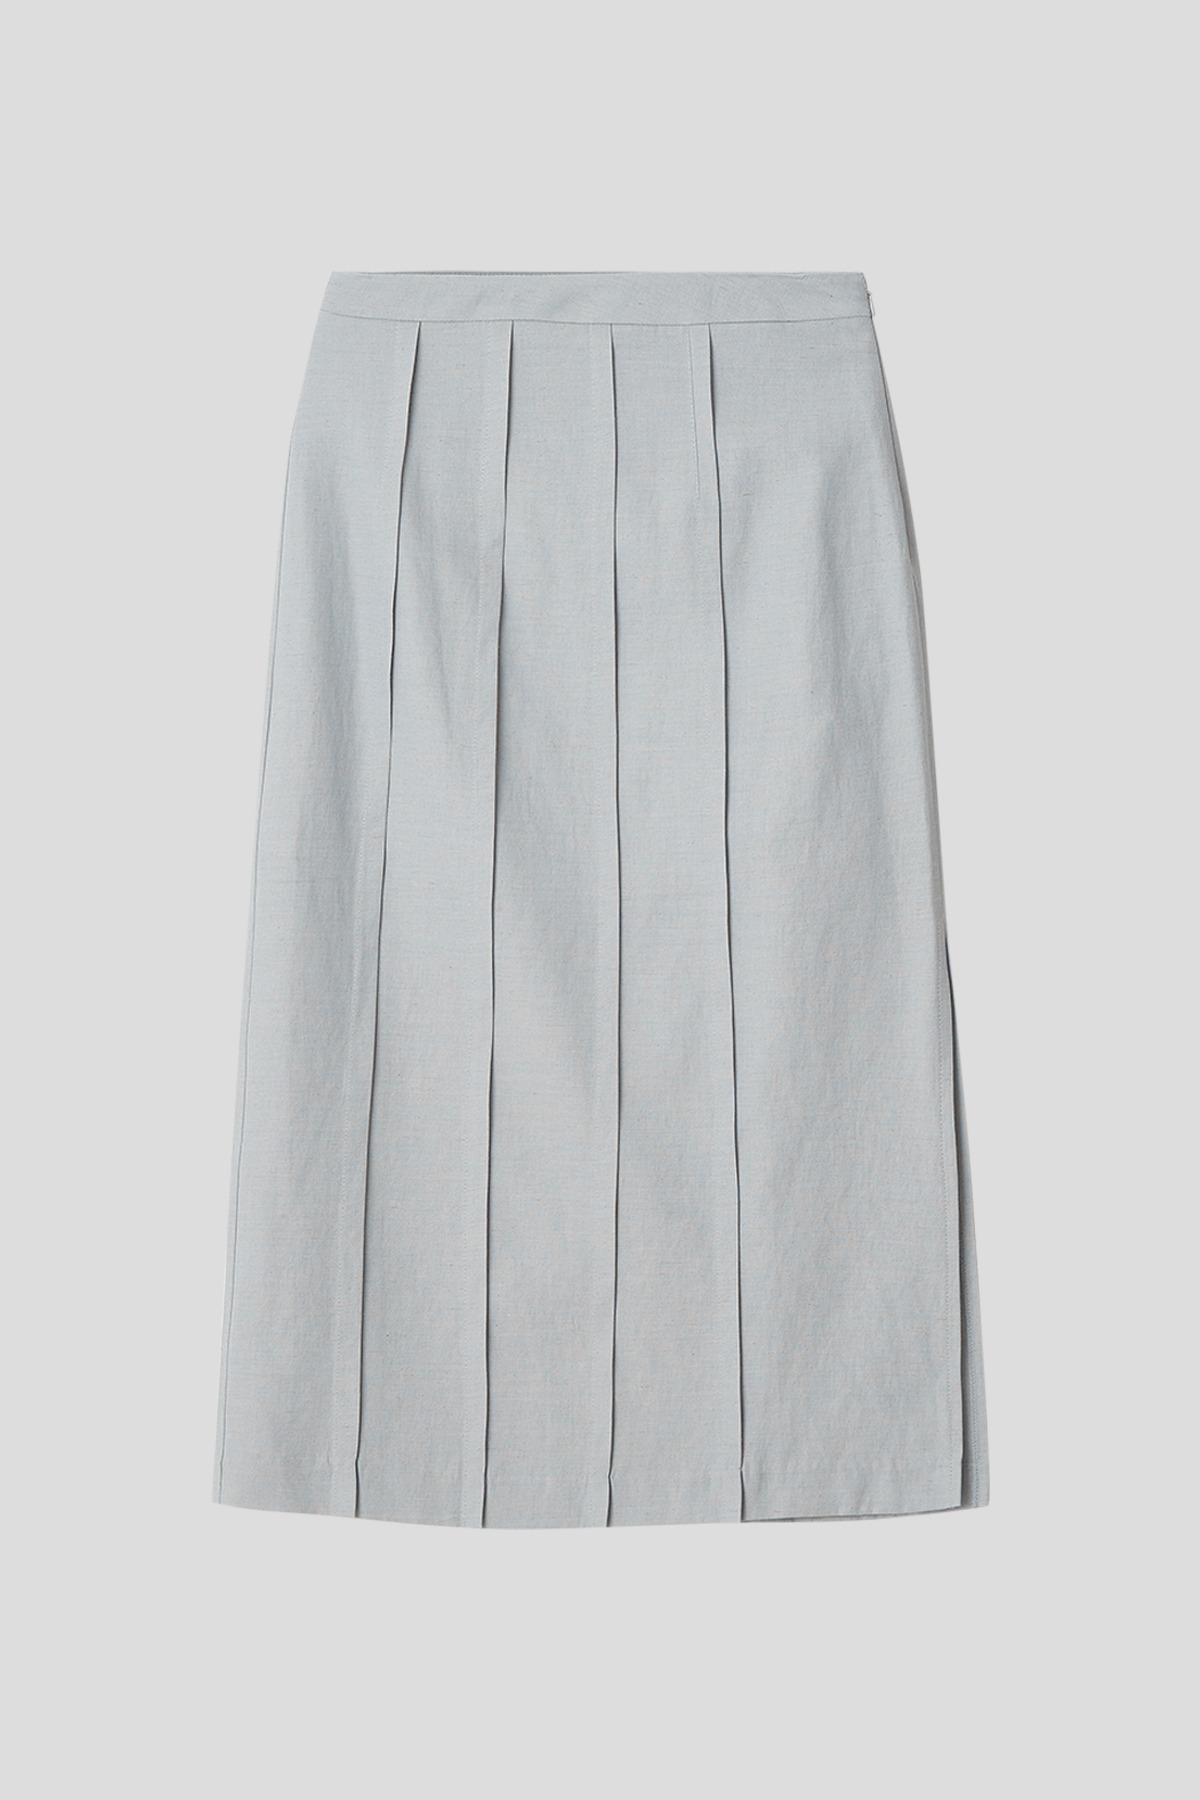 Linen pintuck skirt (light grey)